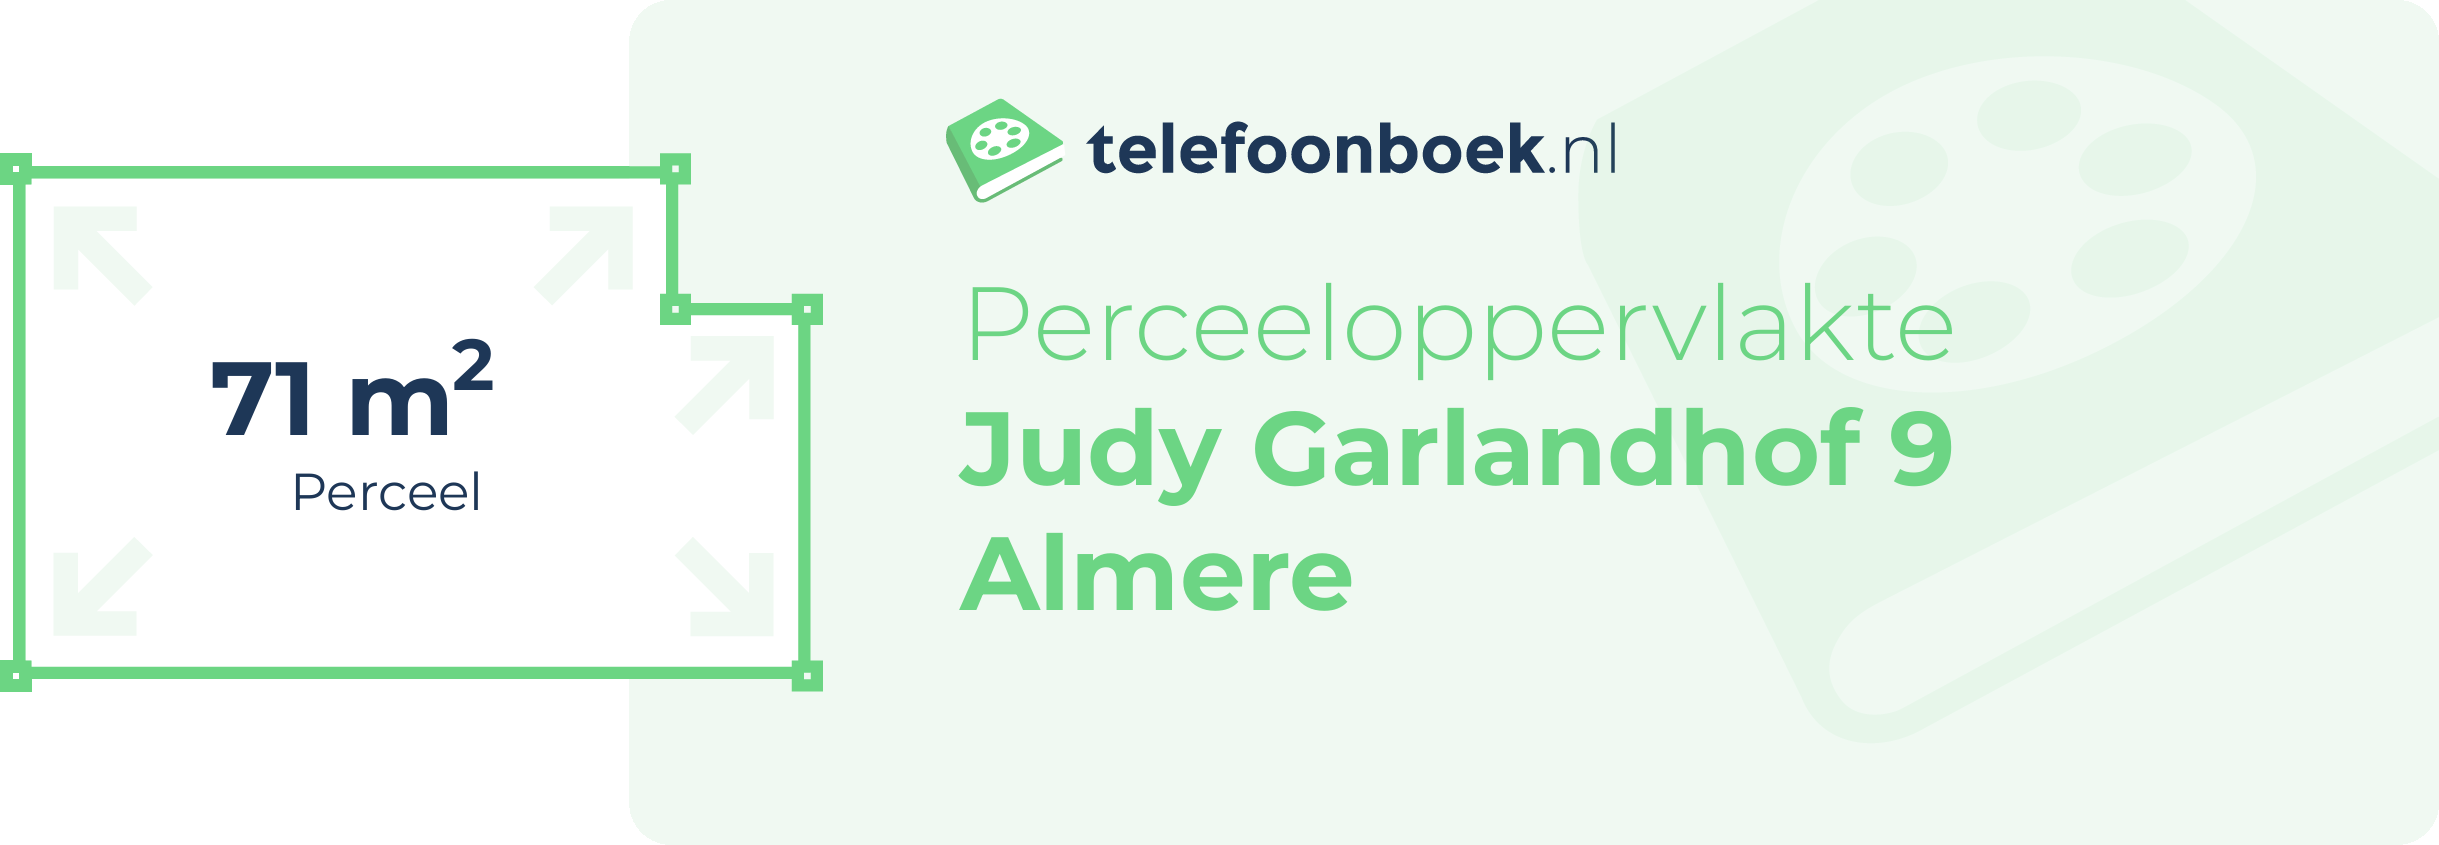 Perceeloppervlakte Judy Garlandhof 9 Almere